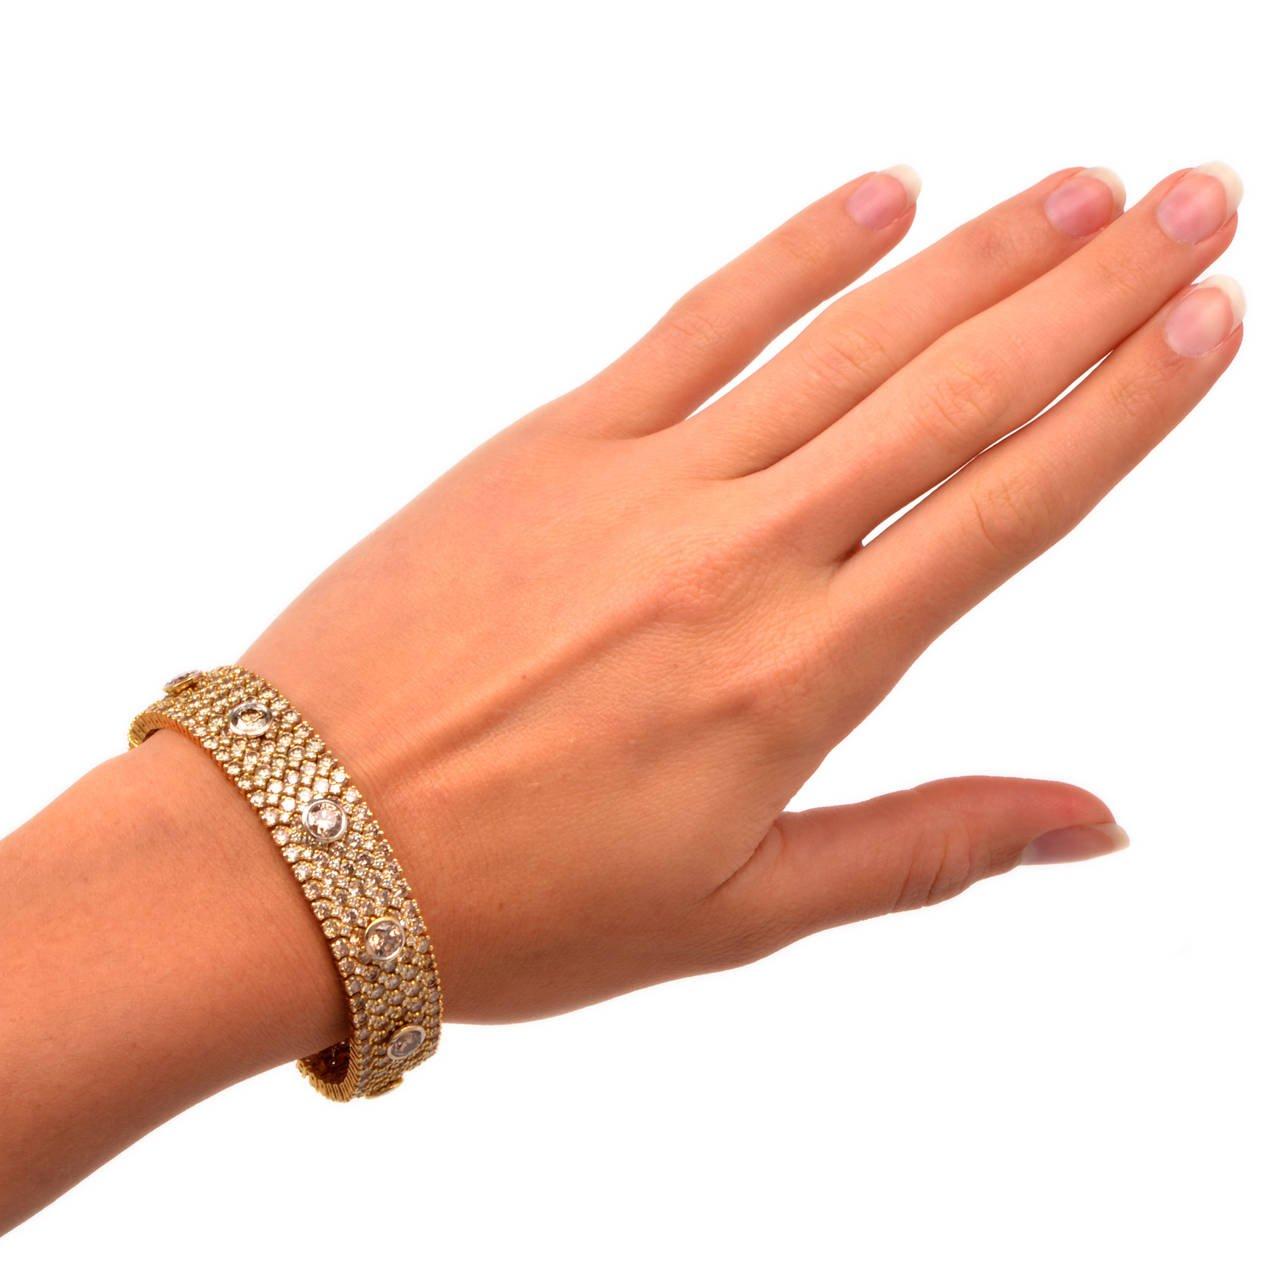 Dieses meisterhaft gestaltete Armband aus den 1980er Jahren mit natürlichen braun-gelben Fancy-Diamanten ist aus massivem 18-karätigem Gelbgold gefertigt und mit einem kunstvollen Netzmuster verziert. Eine Gesamtzahl von 9 braun-gelben